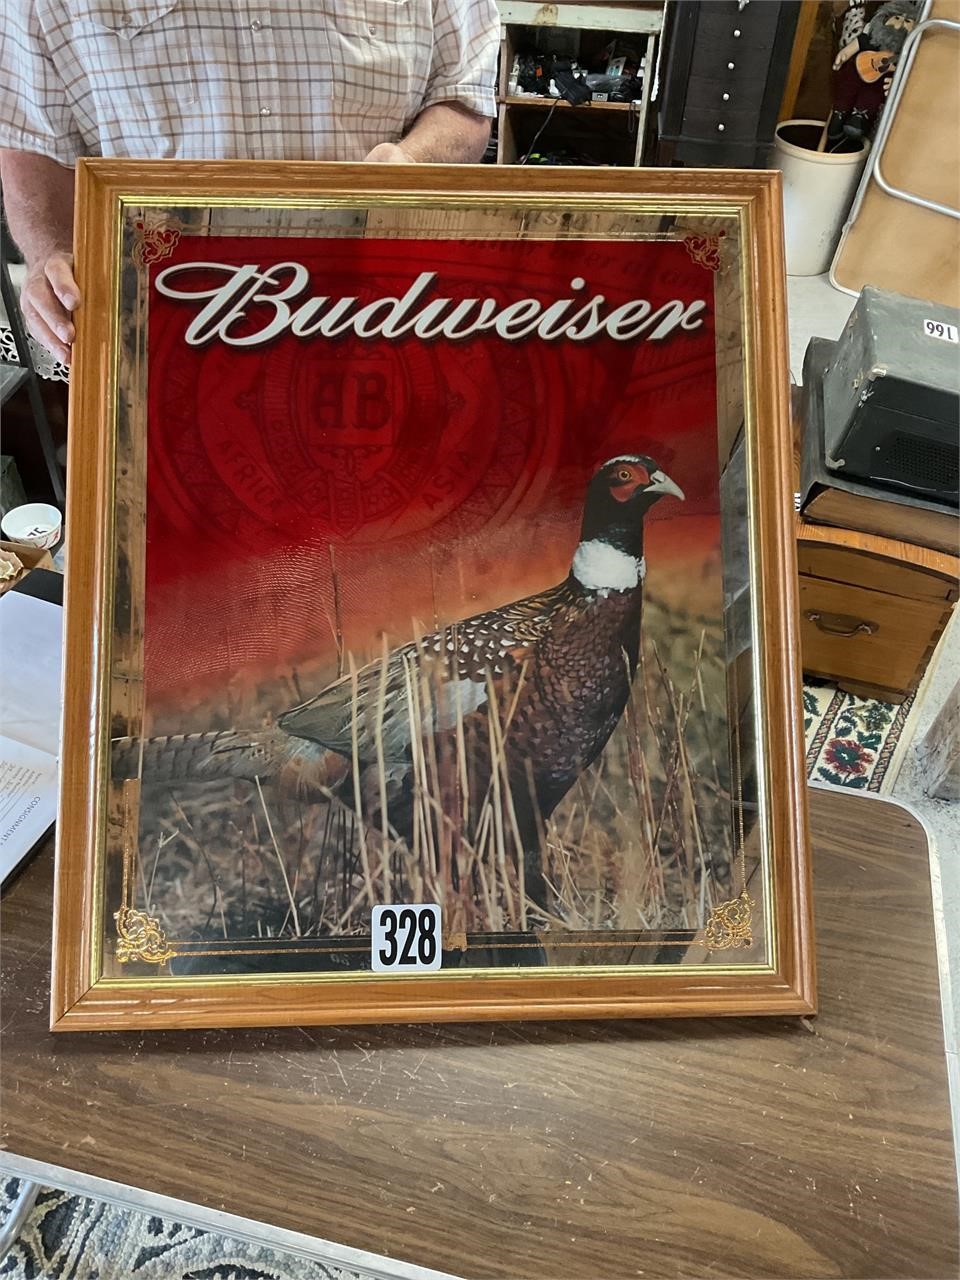 Anheuser Busch + Budweiser picture